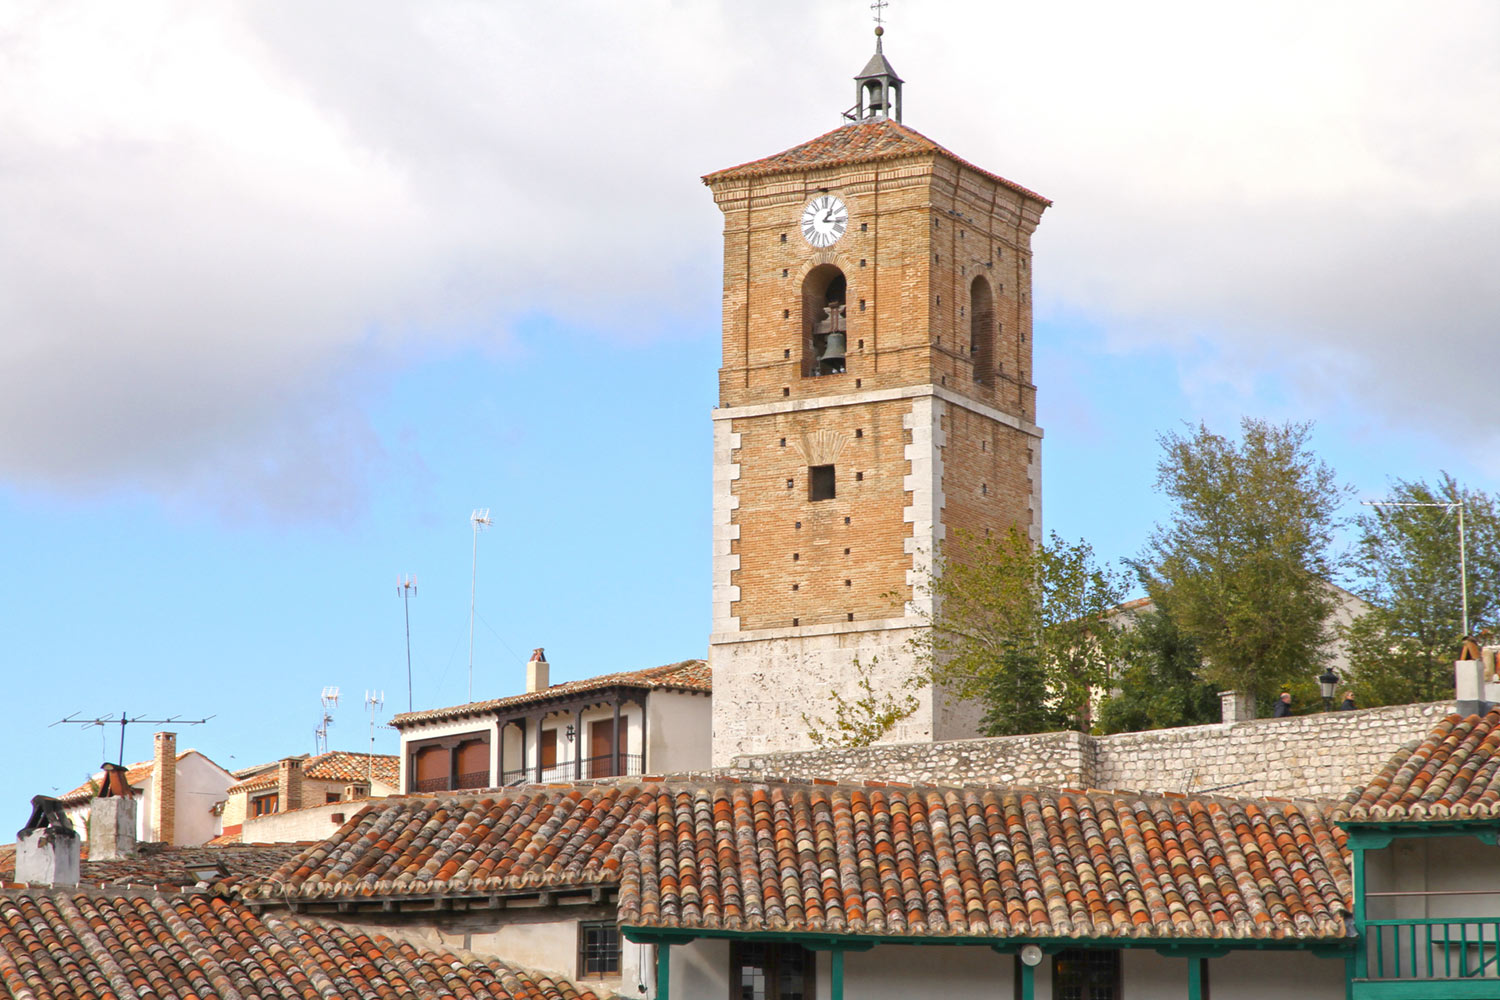 Torre del reloj shutter Ana del Castillo